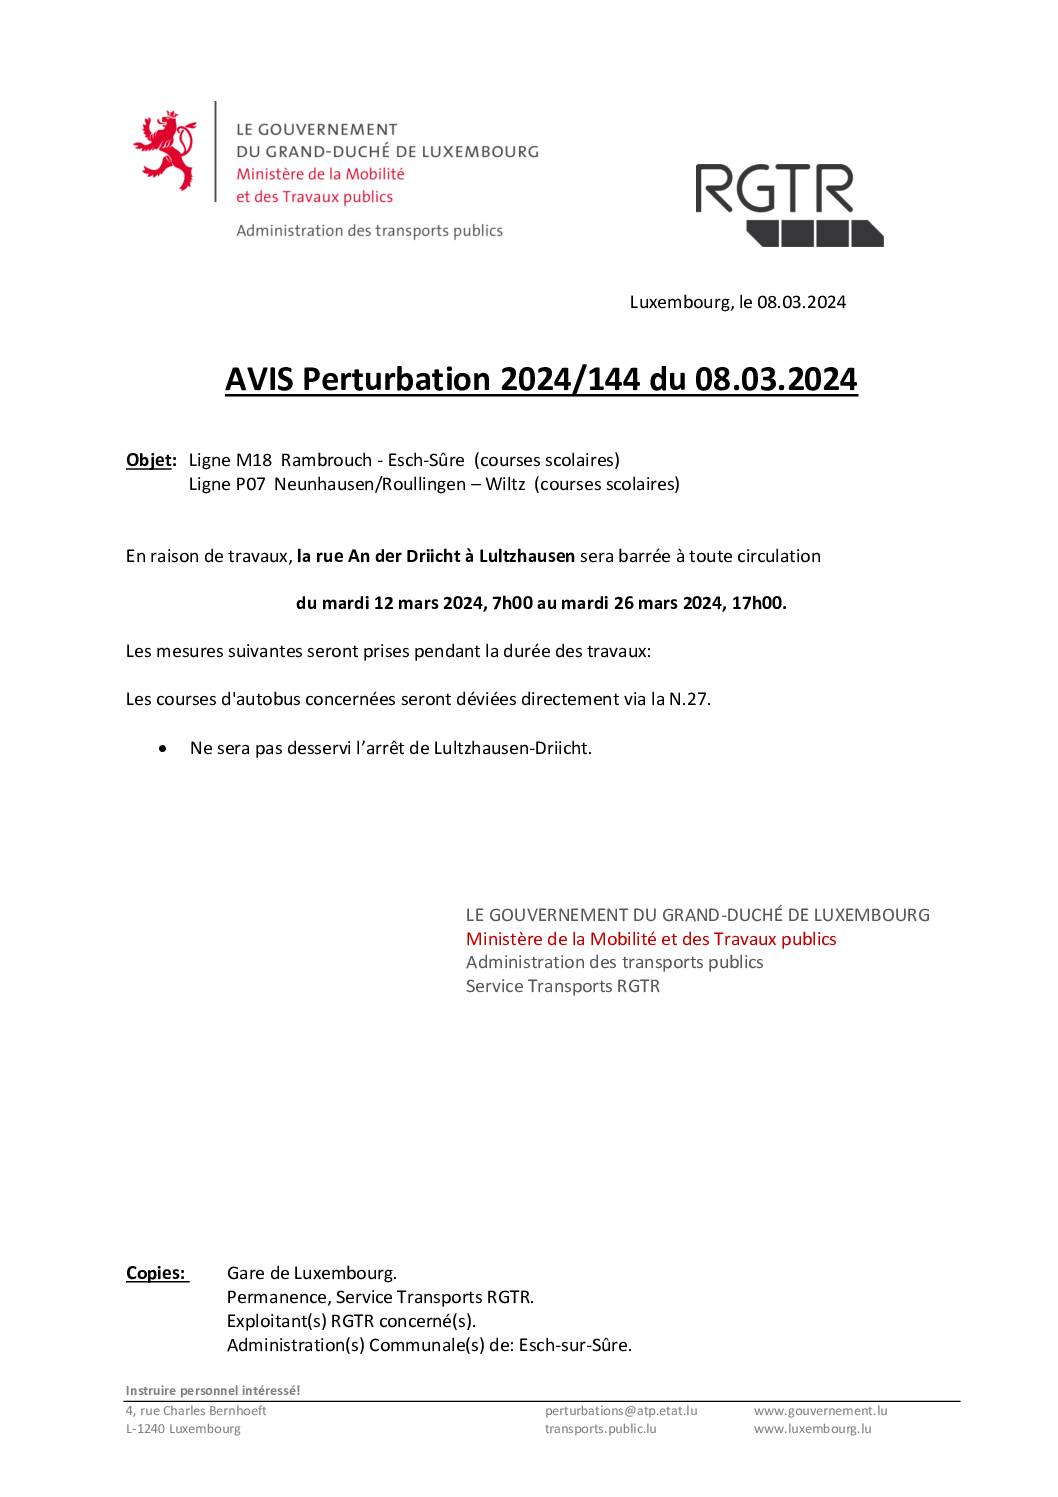 Perturbation 2024/144 - Lignes M18 & P07 (Période du 12.03.2024 au 26.03.2024)